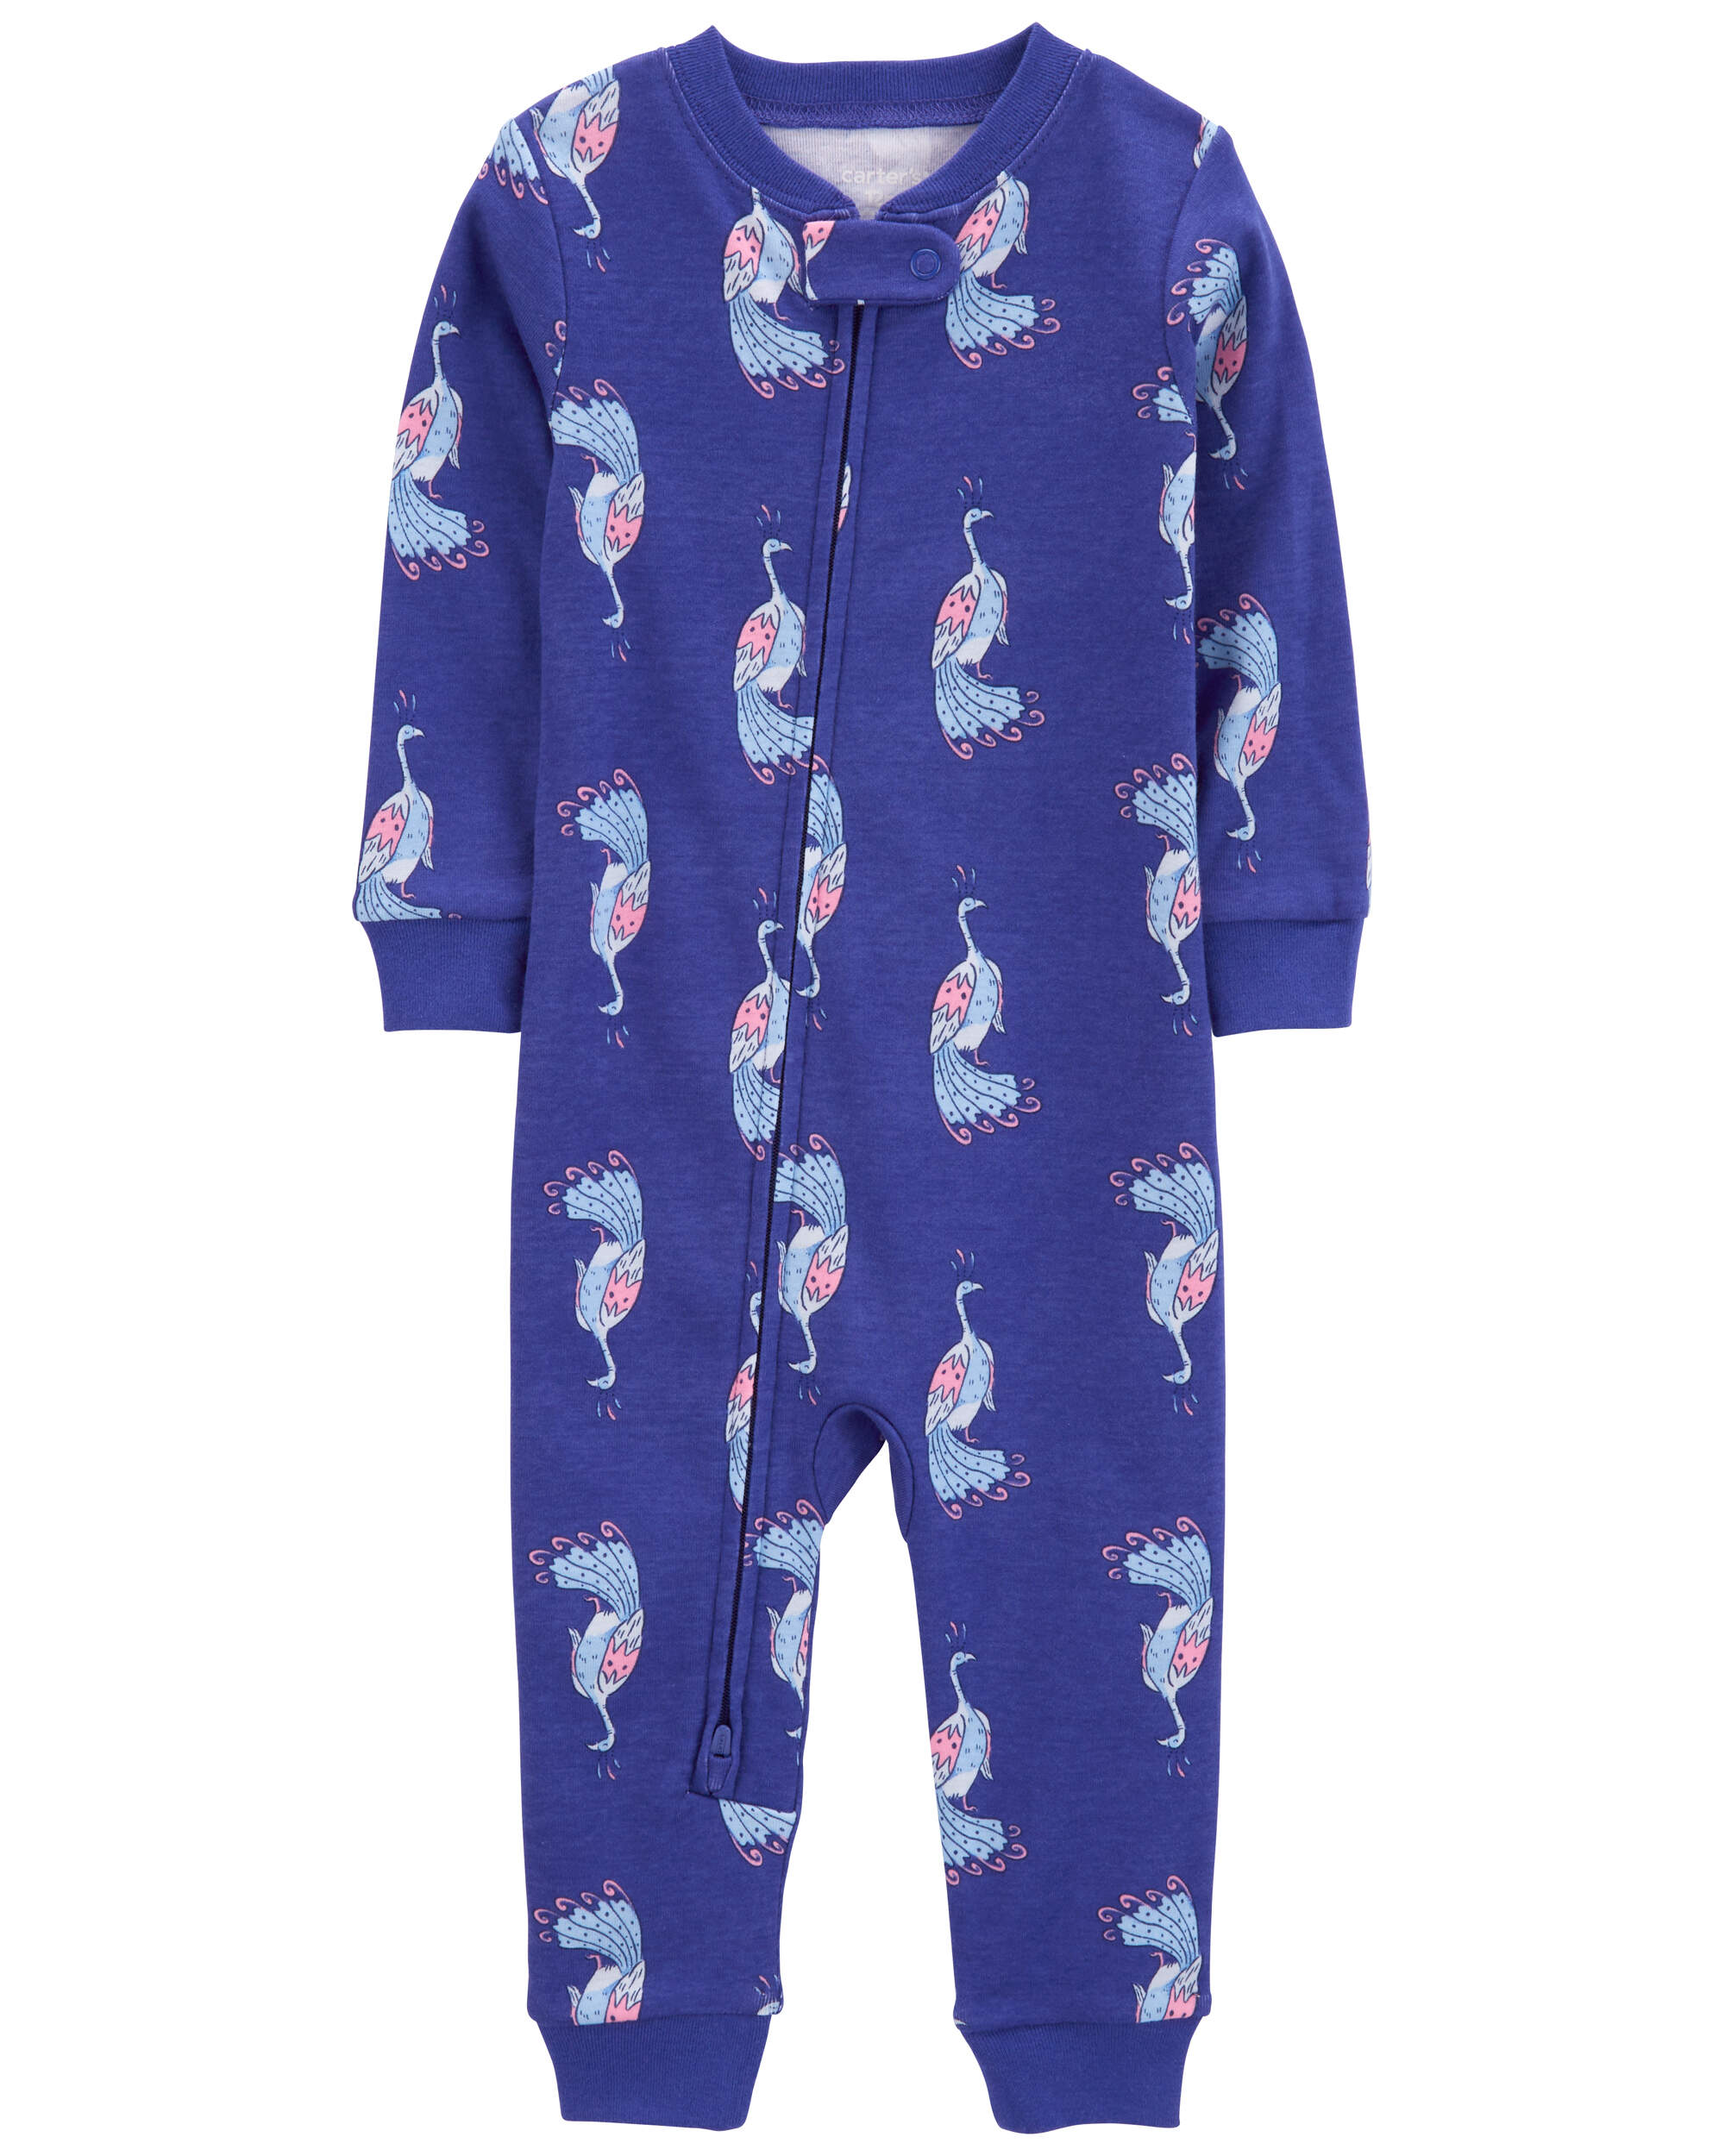 Toddler 1-Piece Peacock 100% Snug Fit Cotton Footless Pyjamas